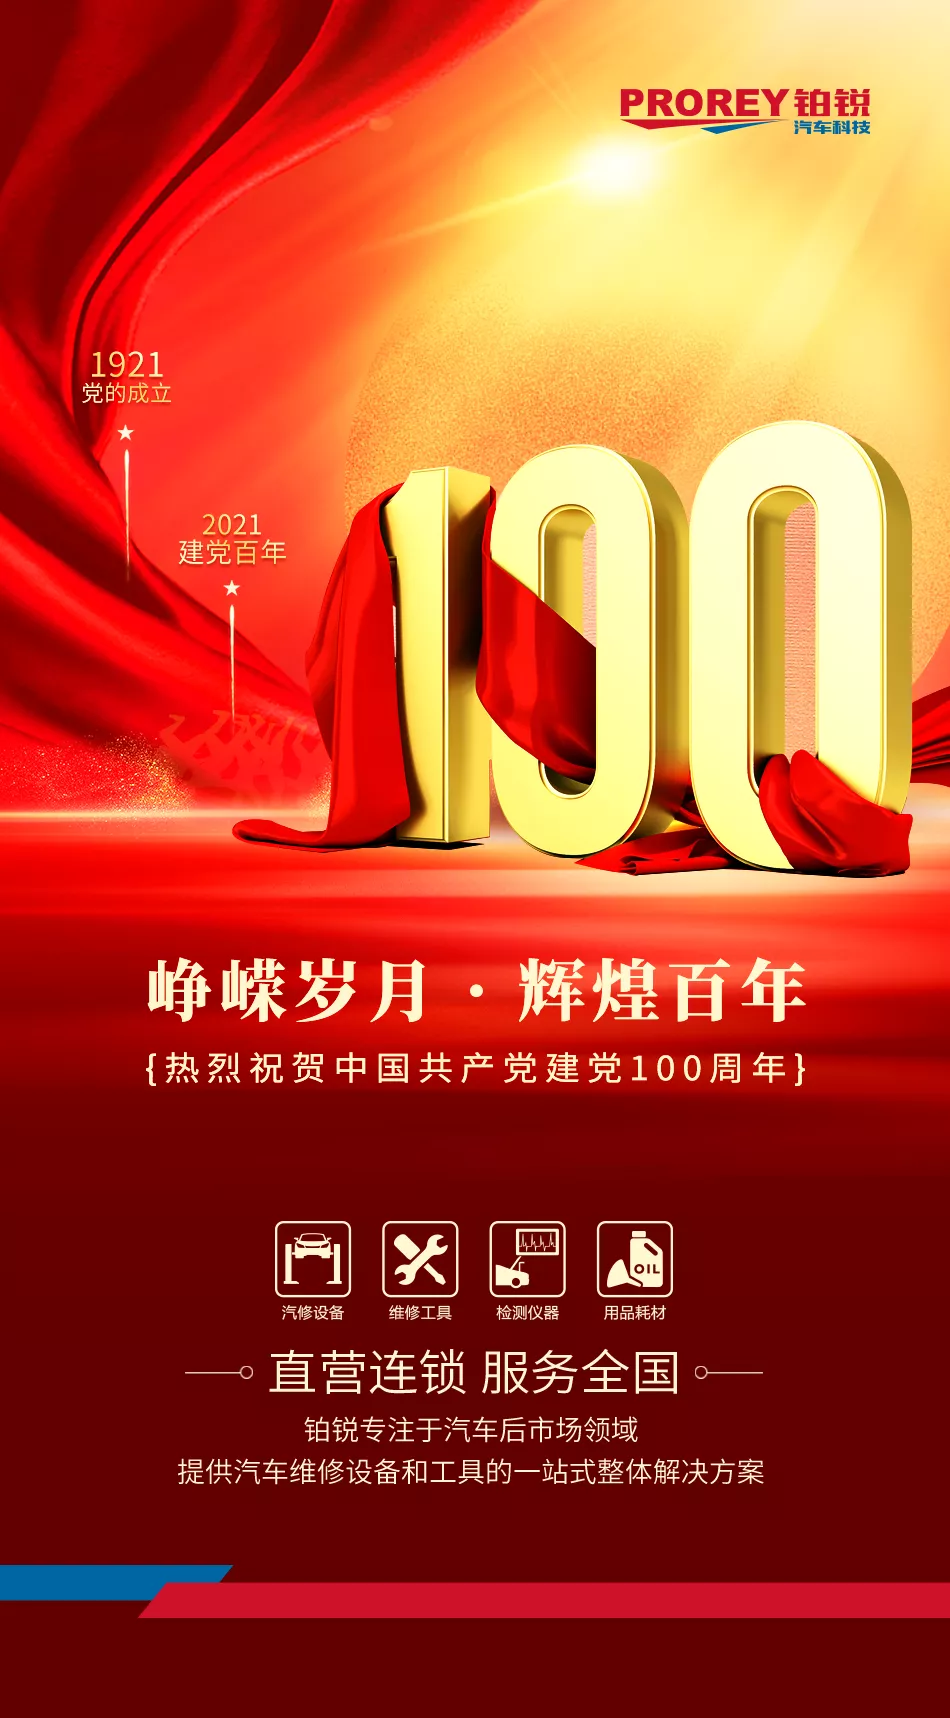 铂锐汽车科技热烈祝贺中国共产党建党100周年